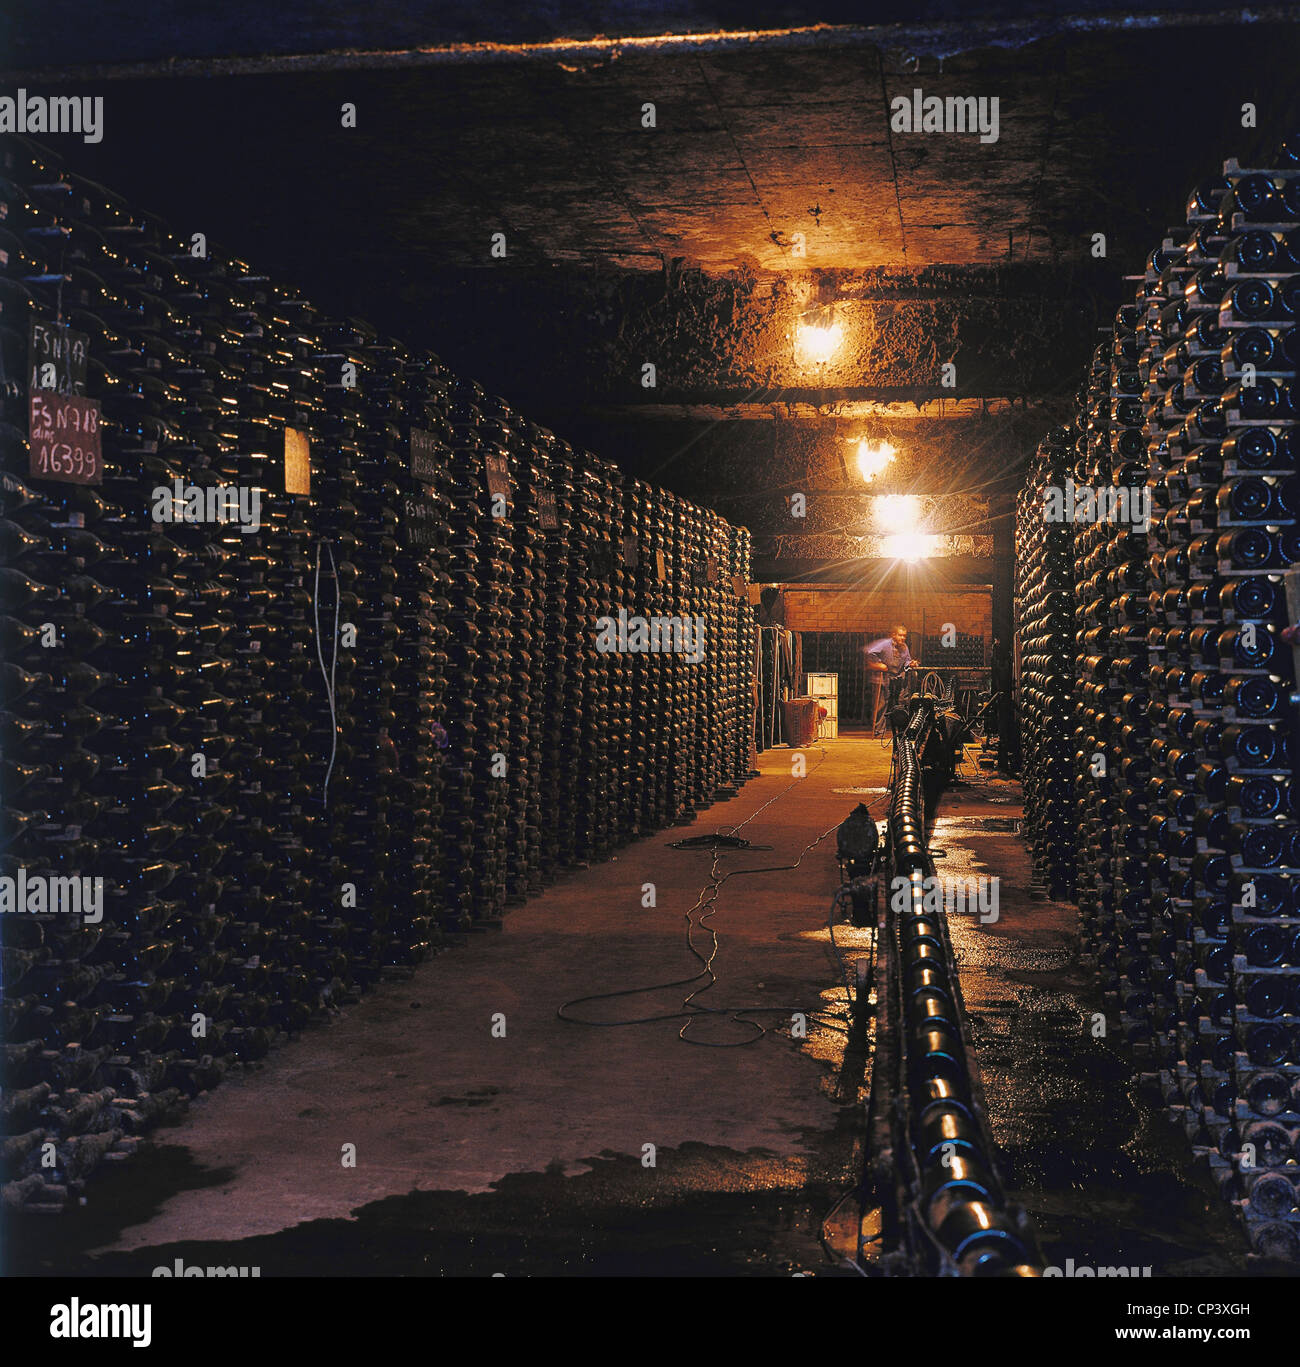 Spagna - Catalogna - la maturazione del vino in cantina. Foto Stock